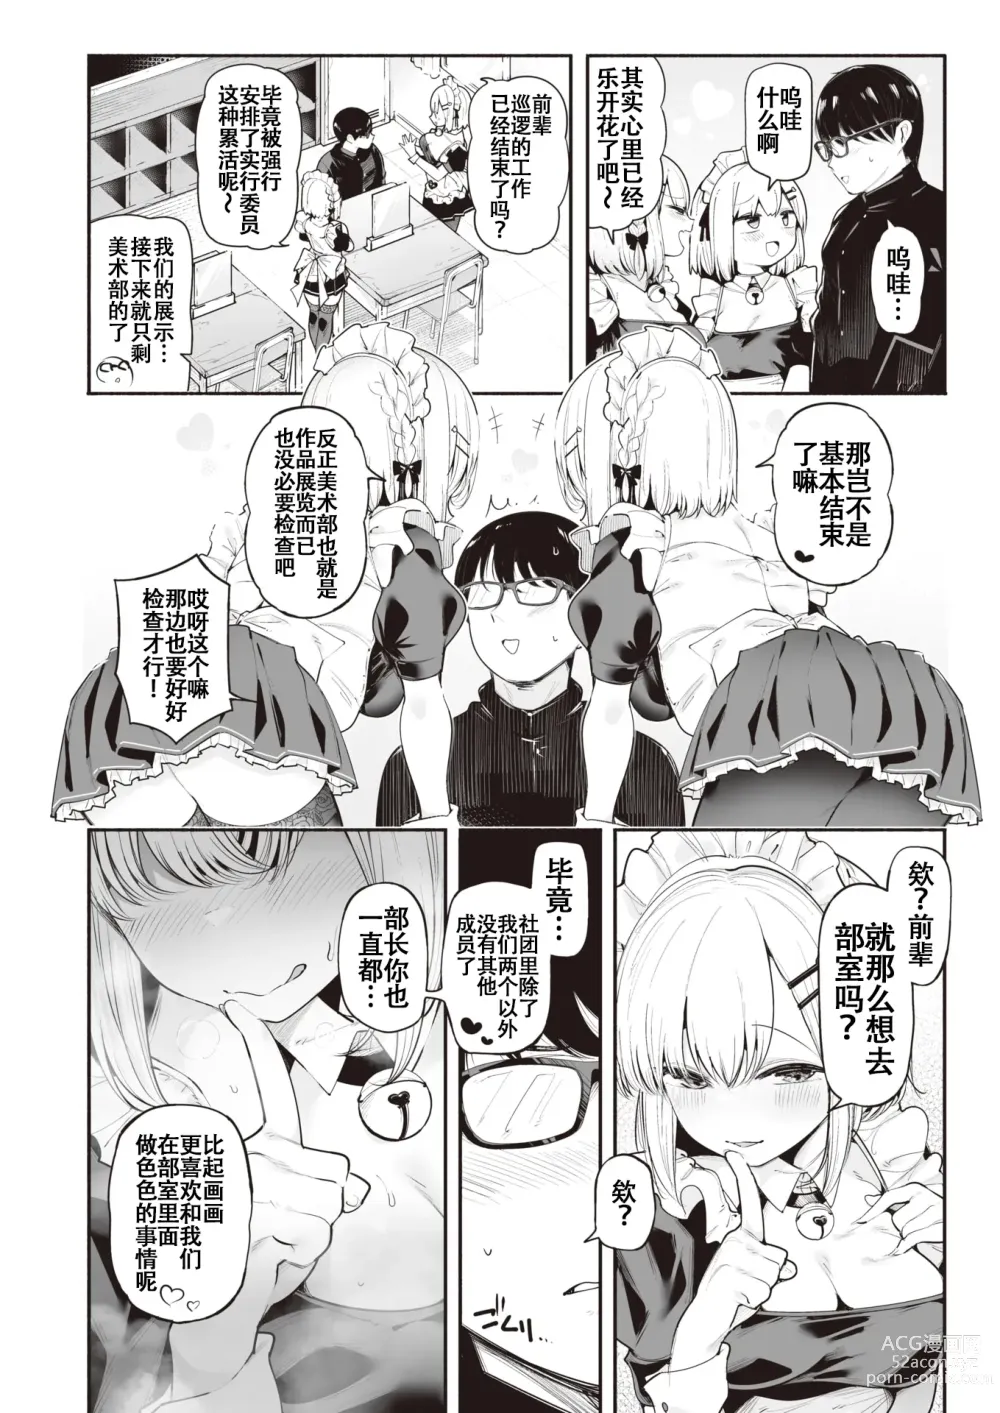 Page 2 of manga 后辈女仆之双胞胎雌小鬼